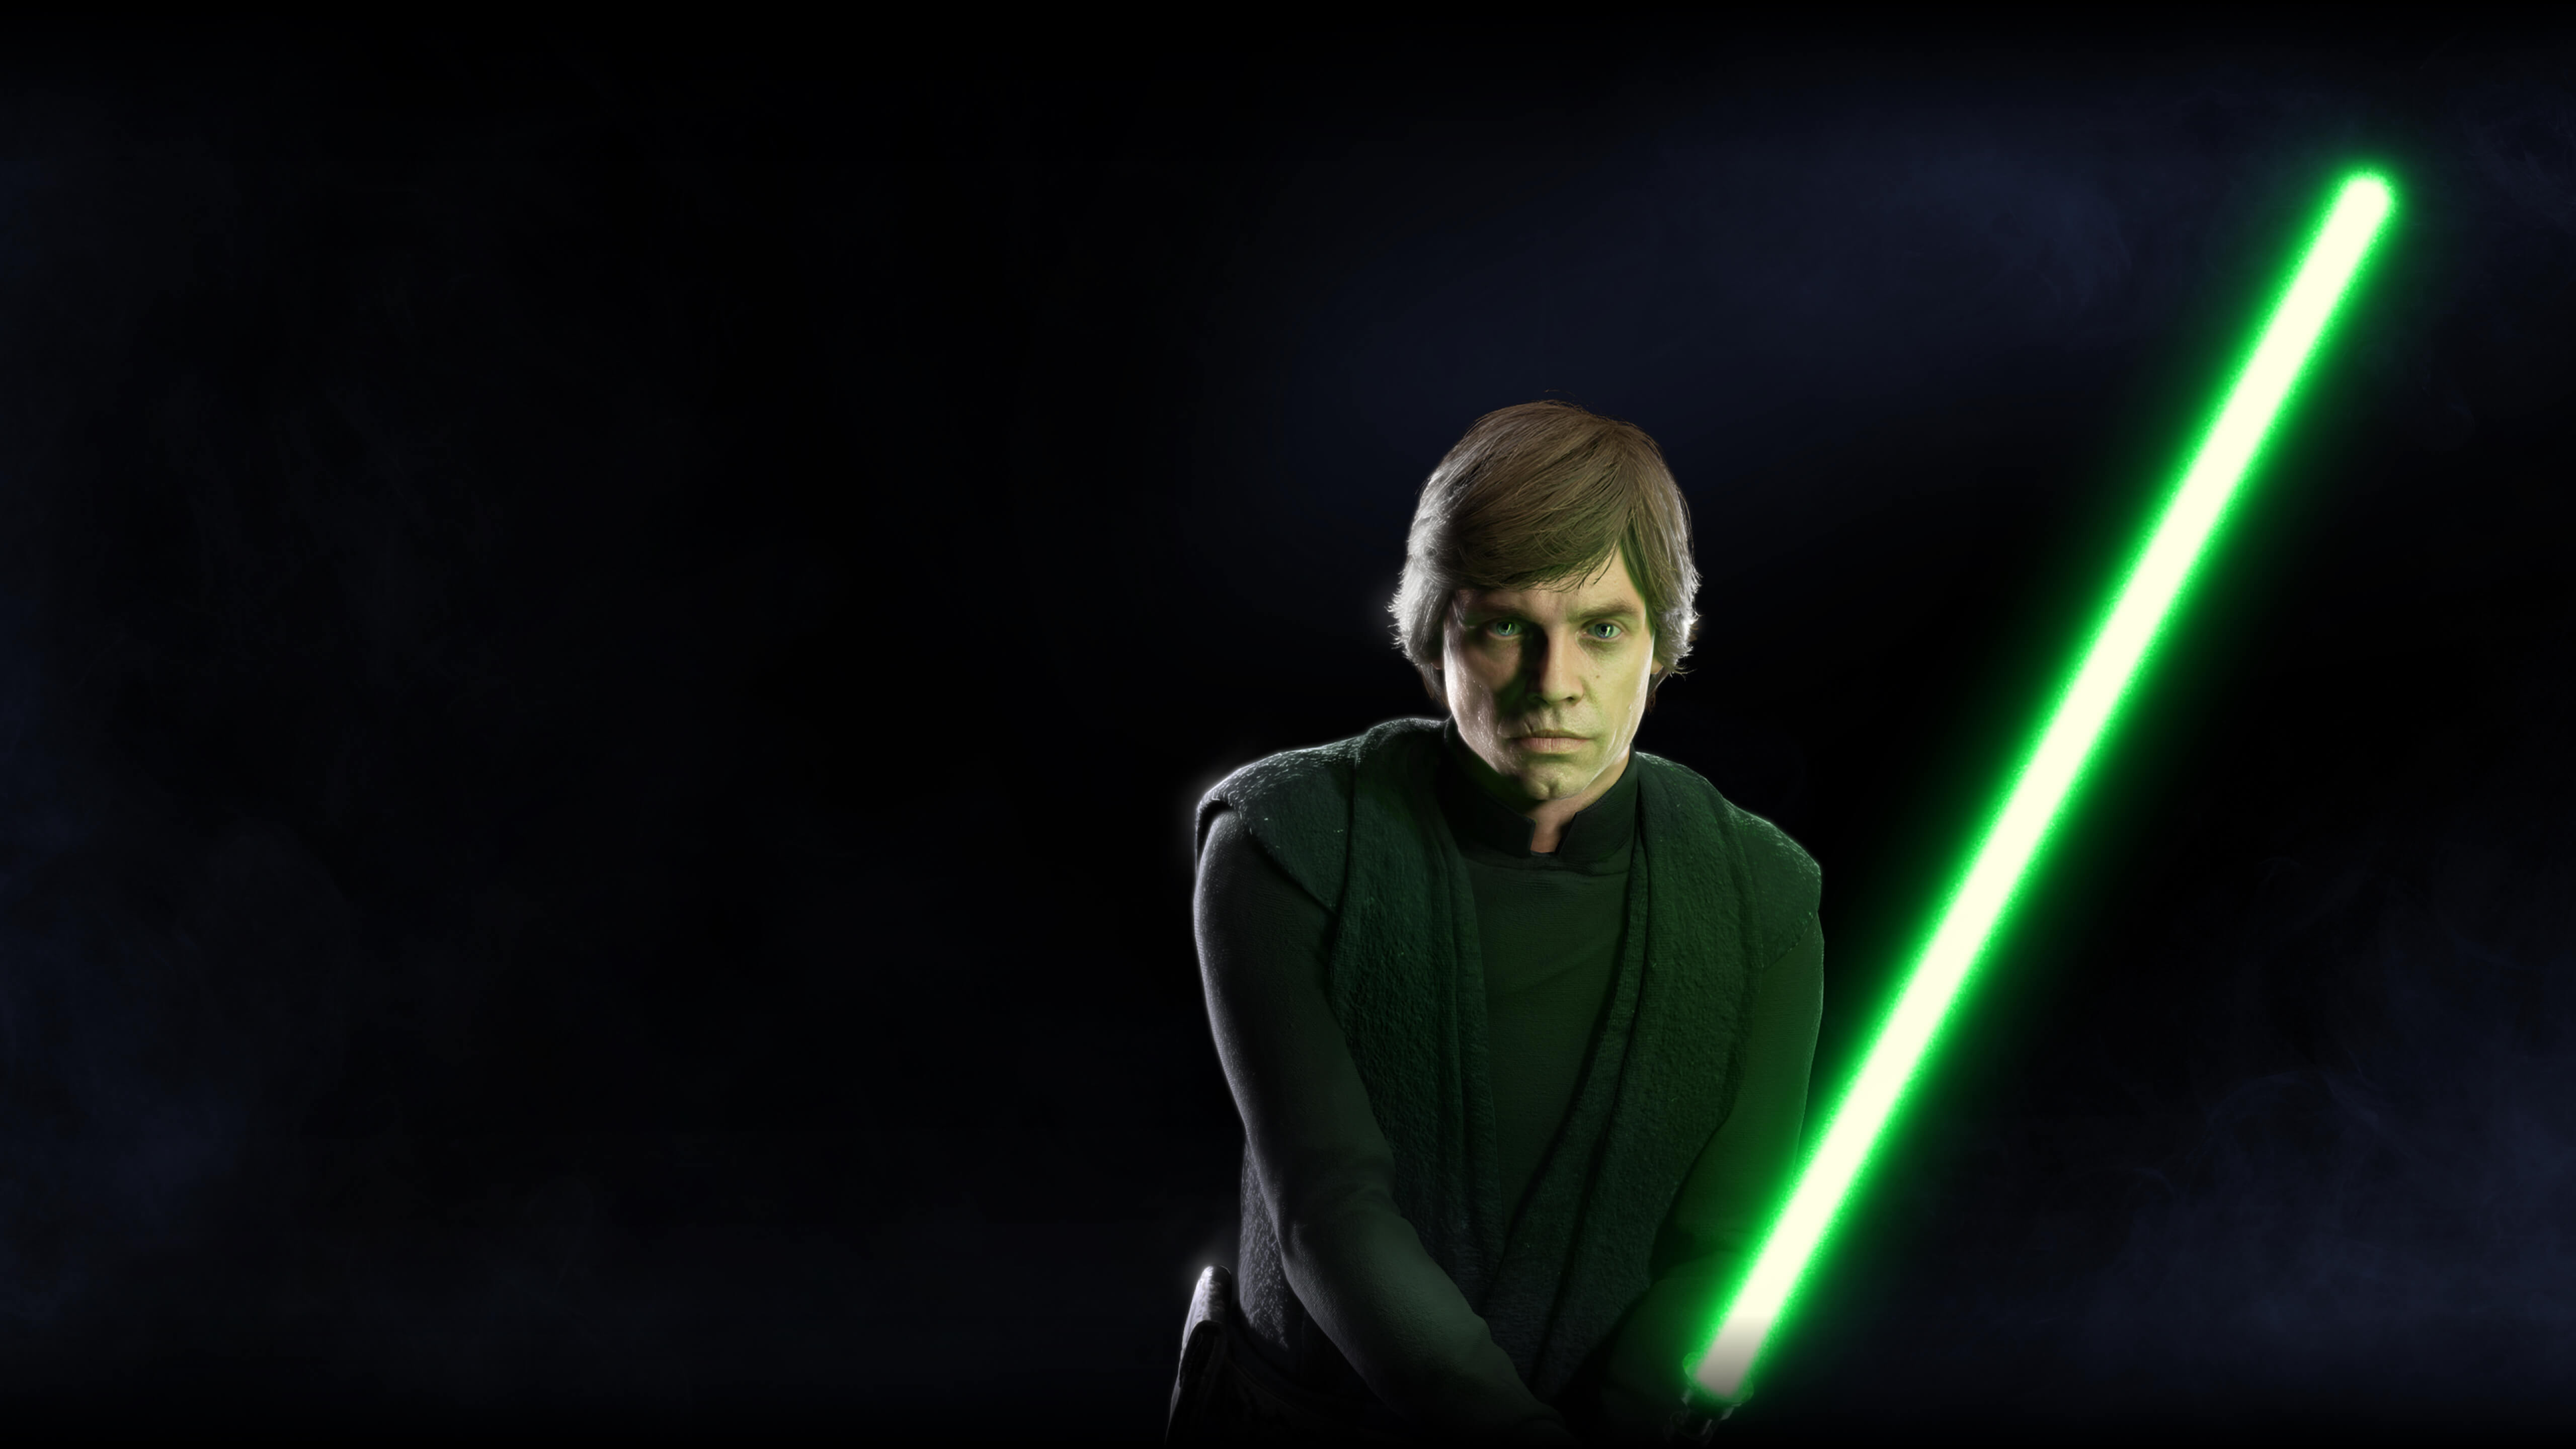 Luke Skywalker Bf2 , HD Wallpaper & Backgrounds